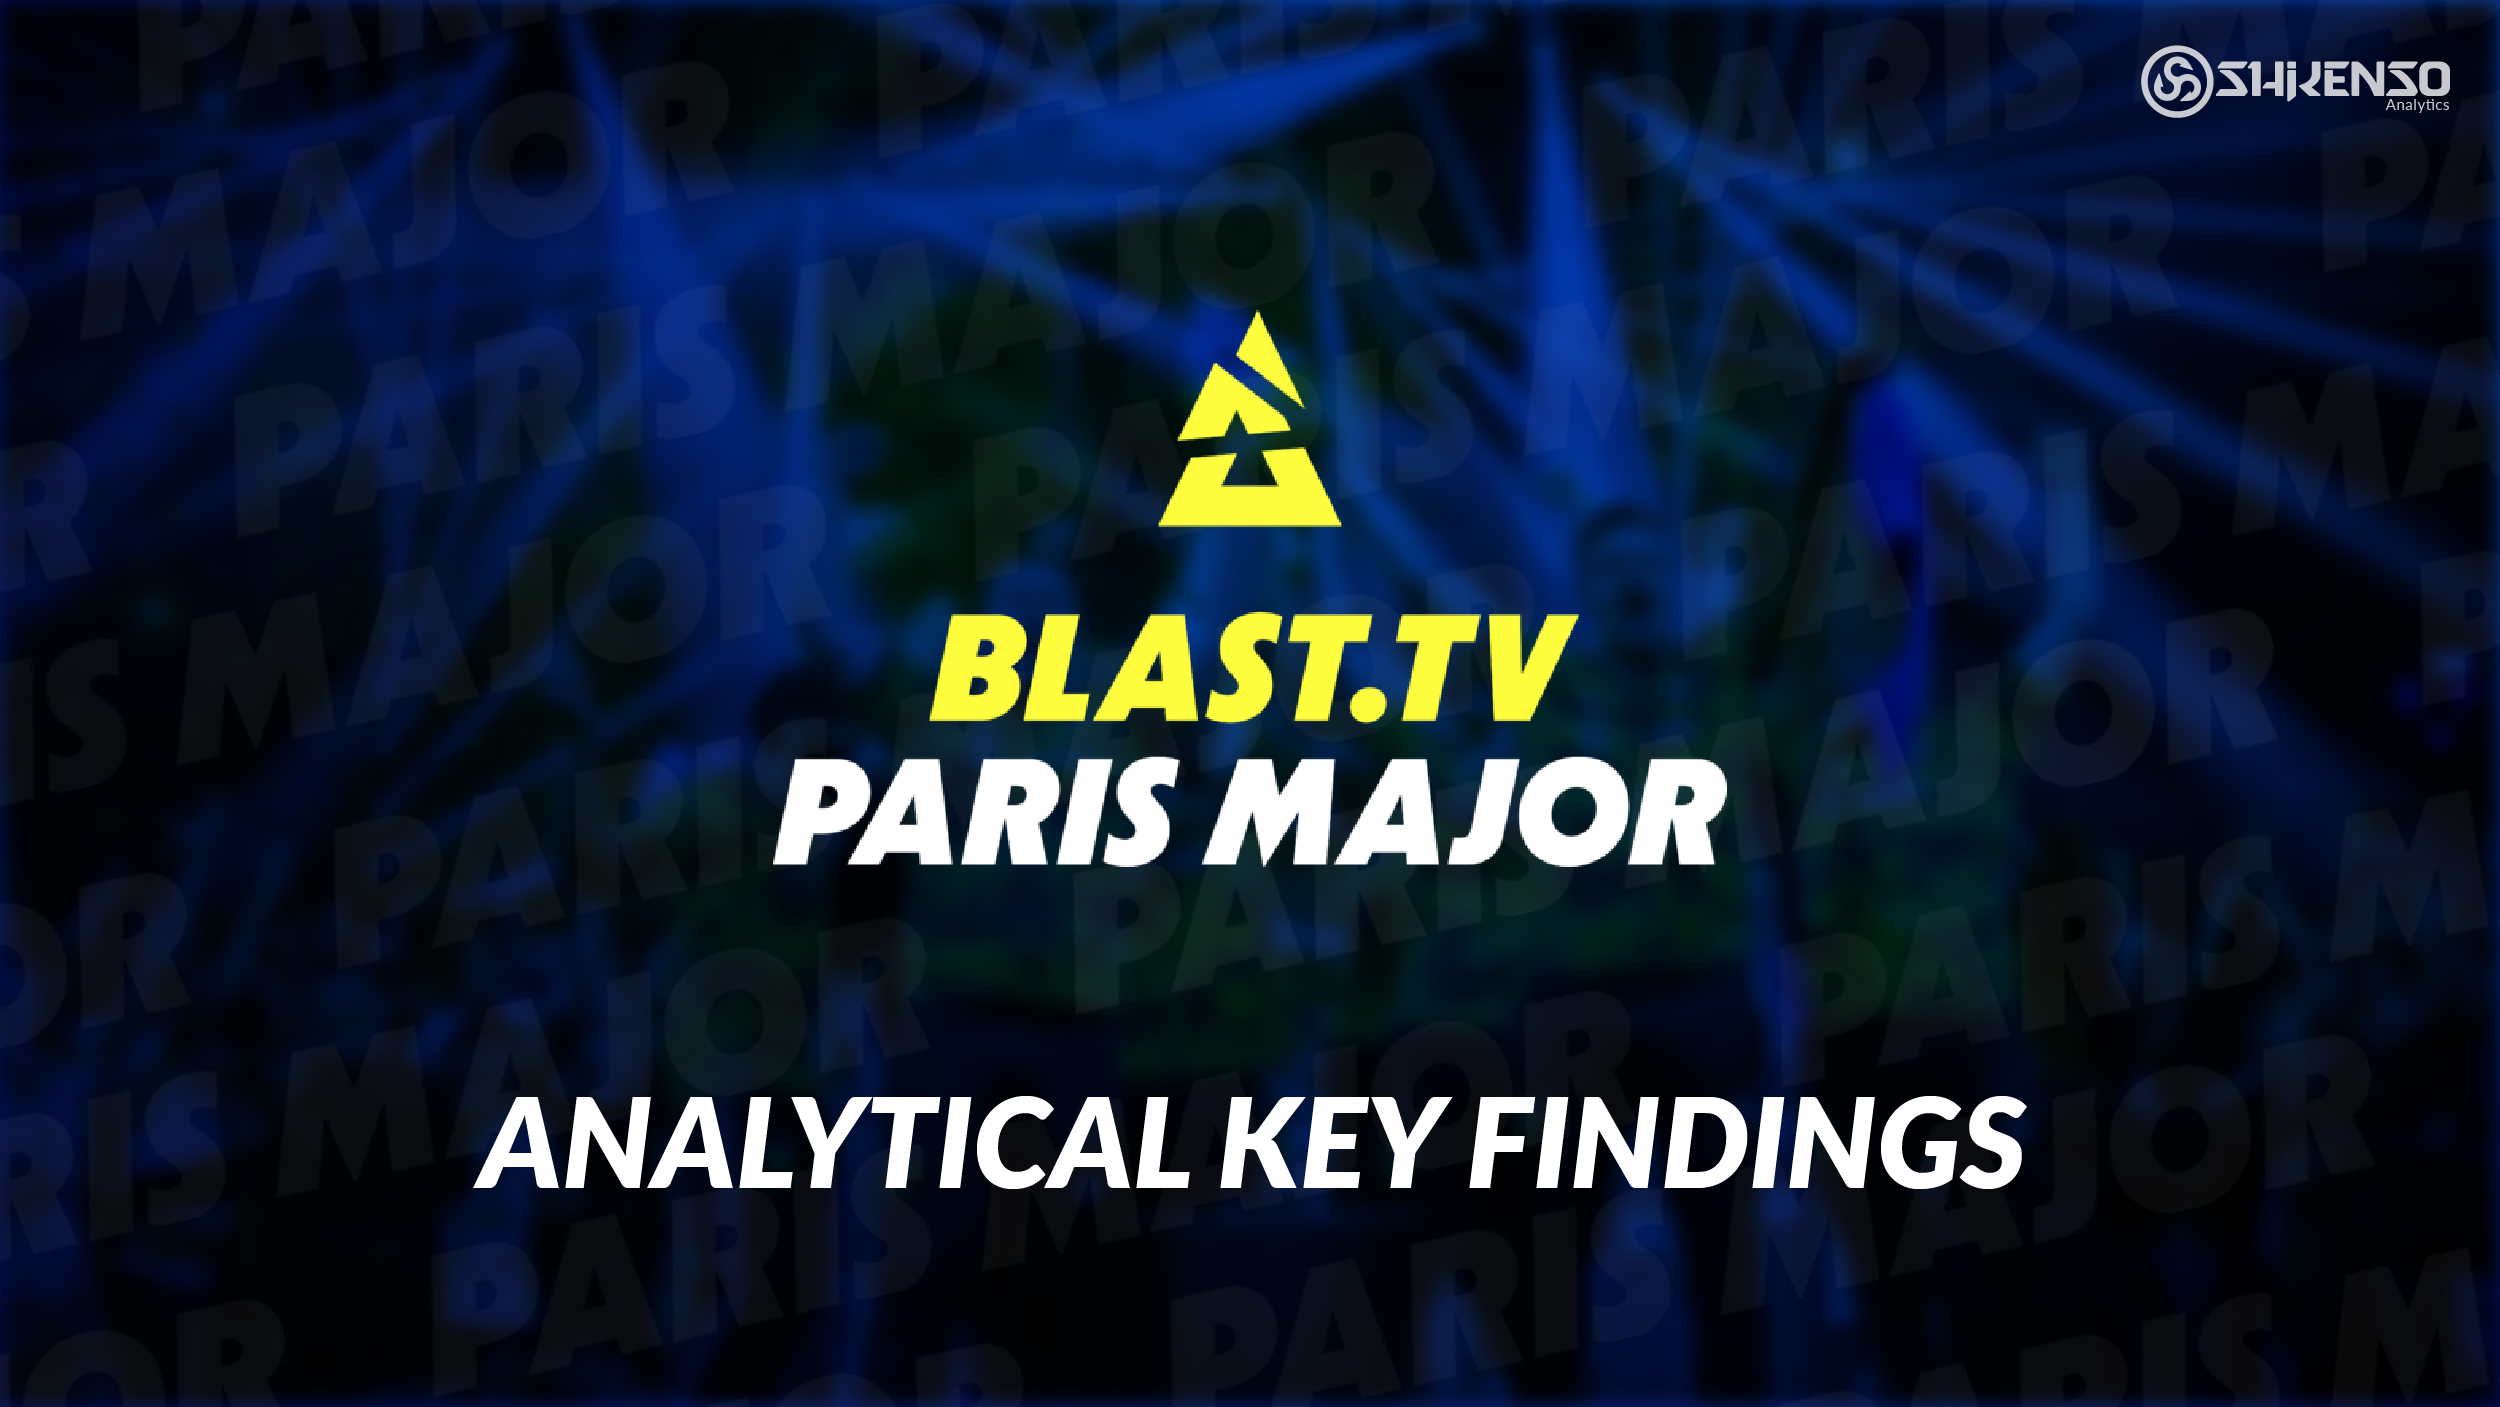 Key Facts about the BLAST.tv Paris Major 2023